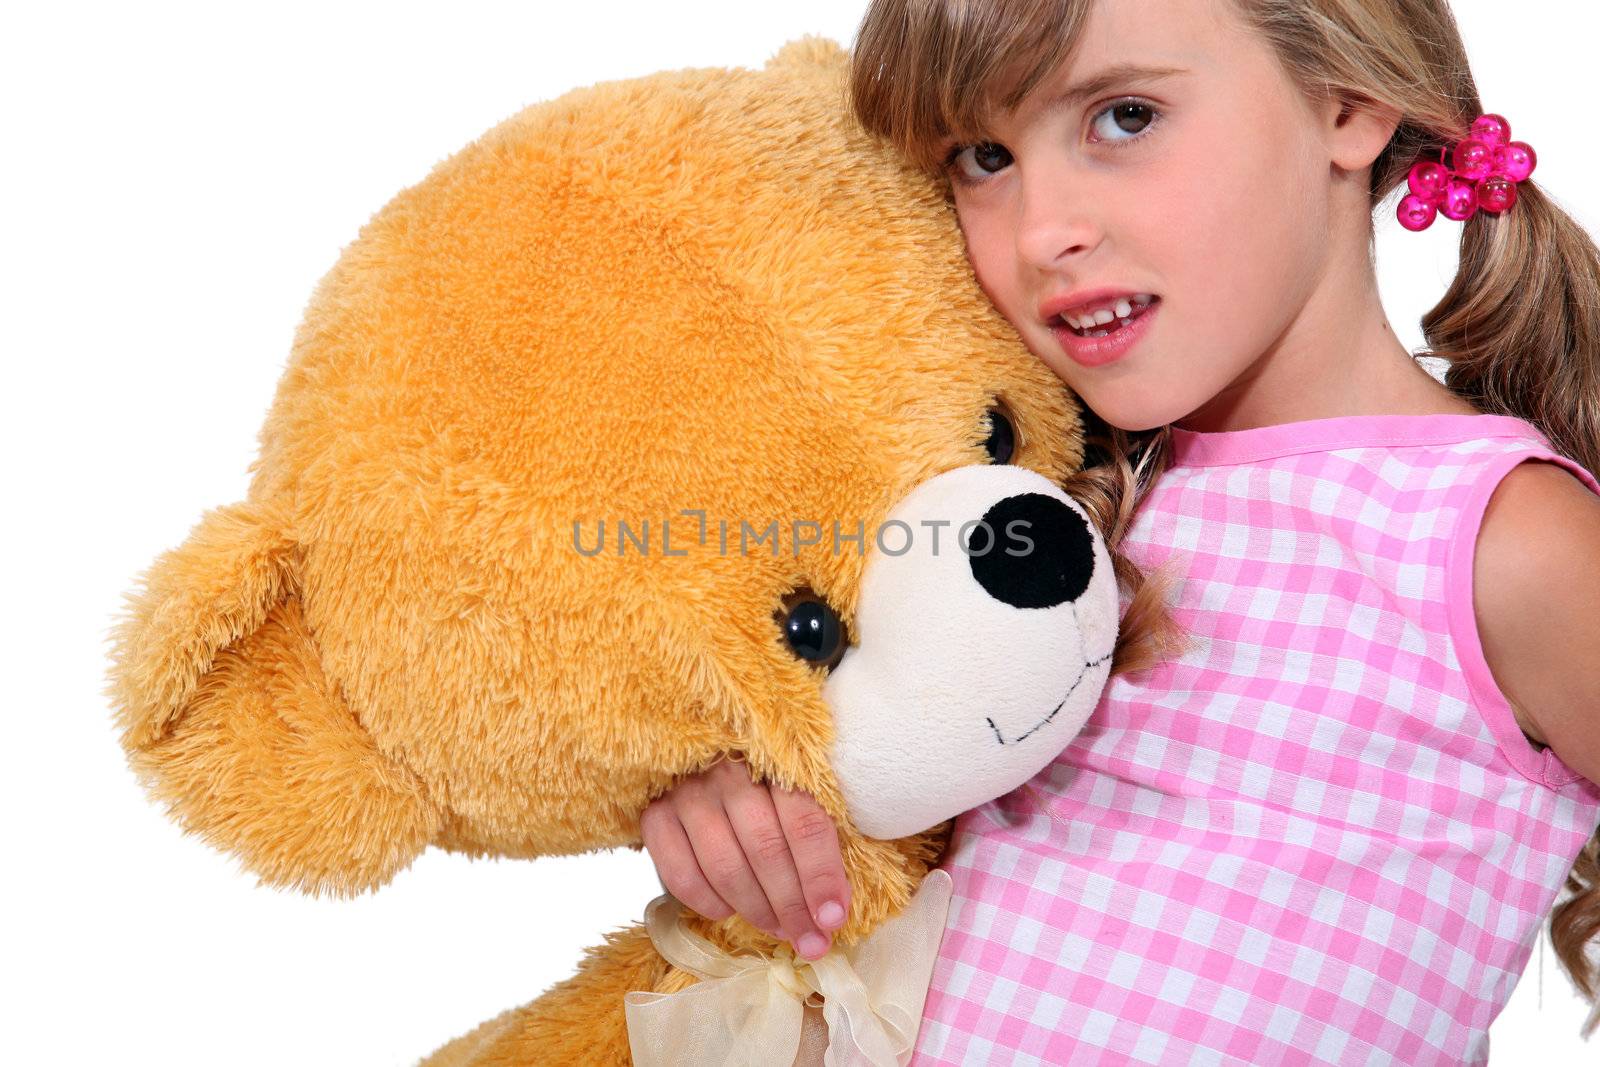 Girl with a teddy bear by phovoir